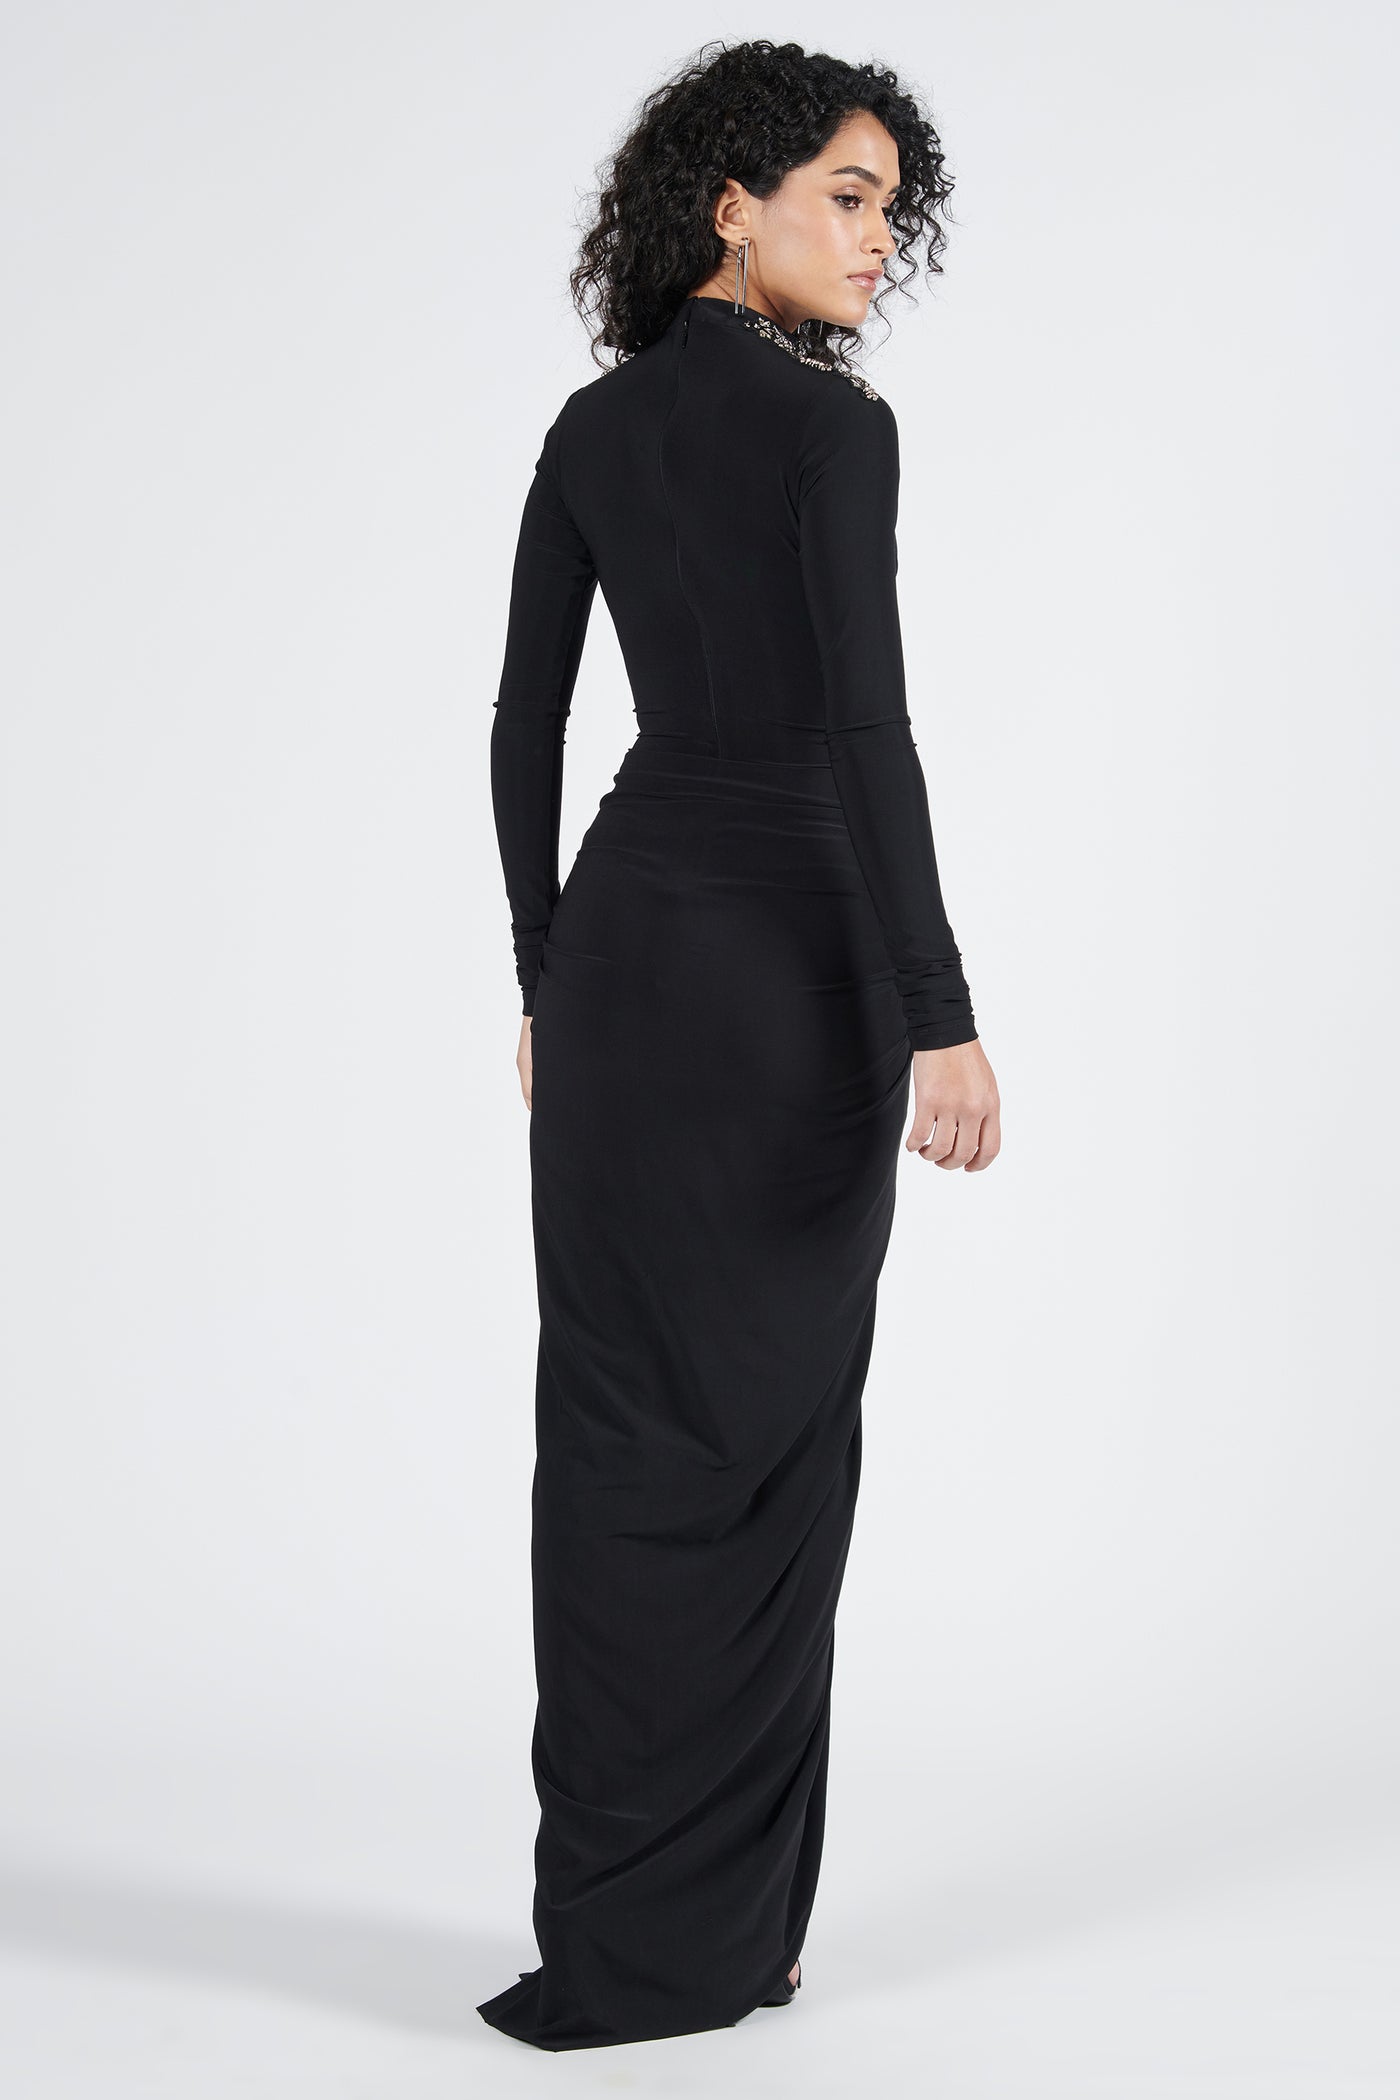 Shantanu & Nikhil Black Twist Drape Saree Gown indian designer wear online shopping melange singapore